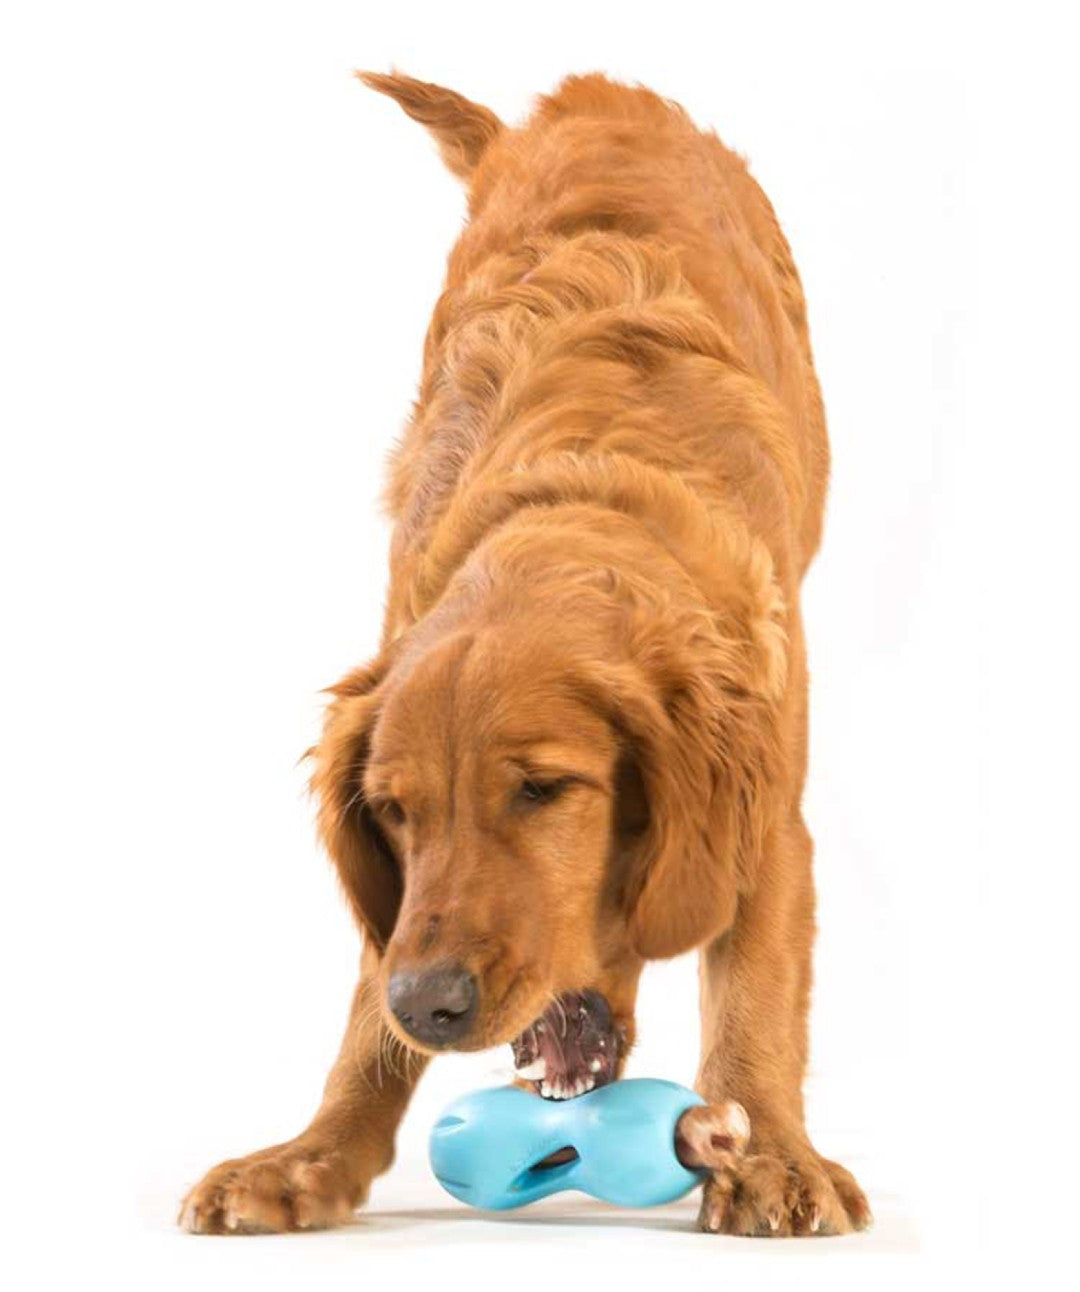 West Paw Qwizl Treat Assorted Dog Chew Toy, Small